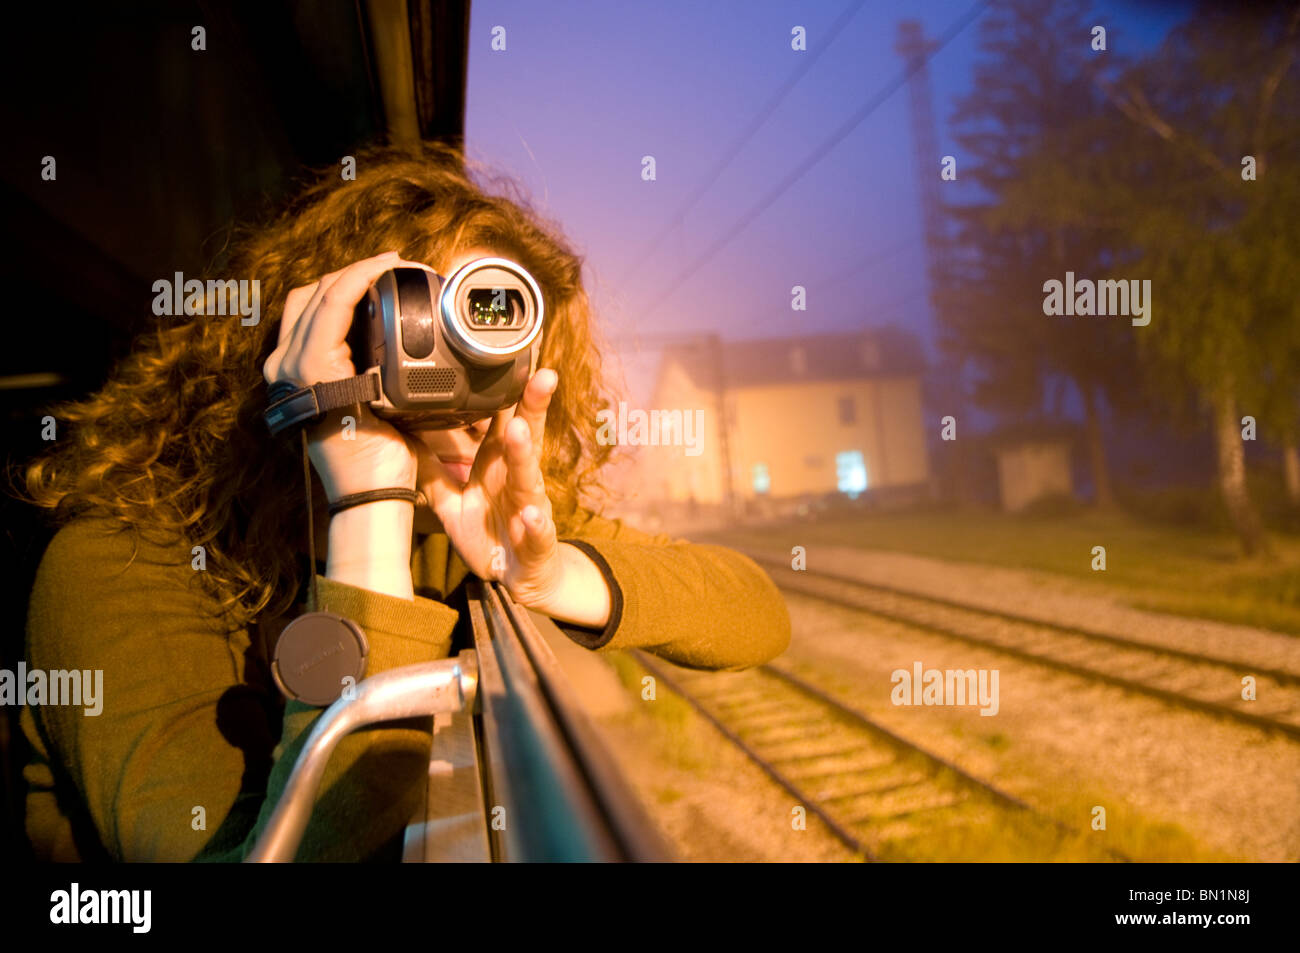 Une femme de filmer avec une caméra vidéo d'un train dans la Republika Srpska, l'une des deux entités politiques de la Bosnie et Herzégovine Banque D'Images